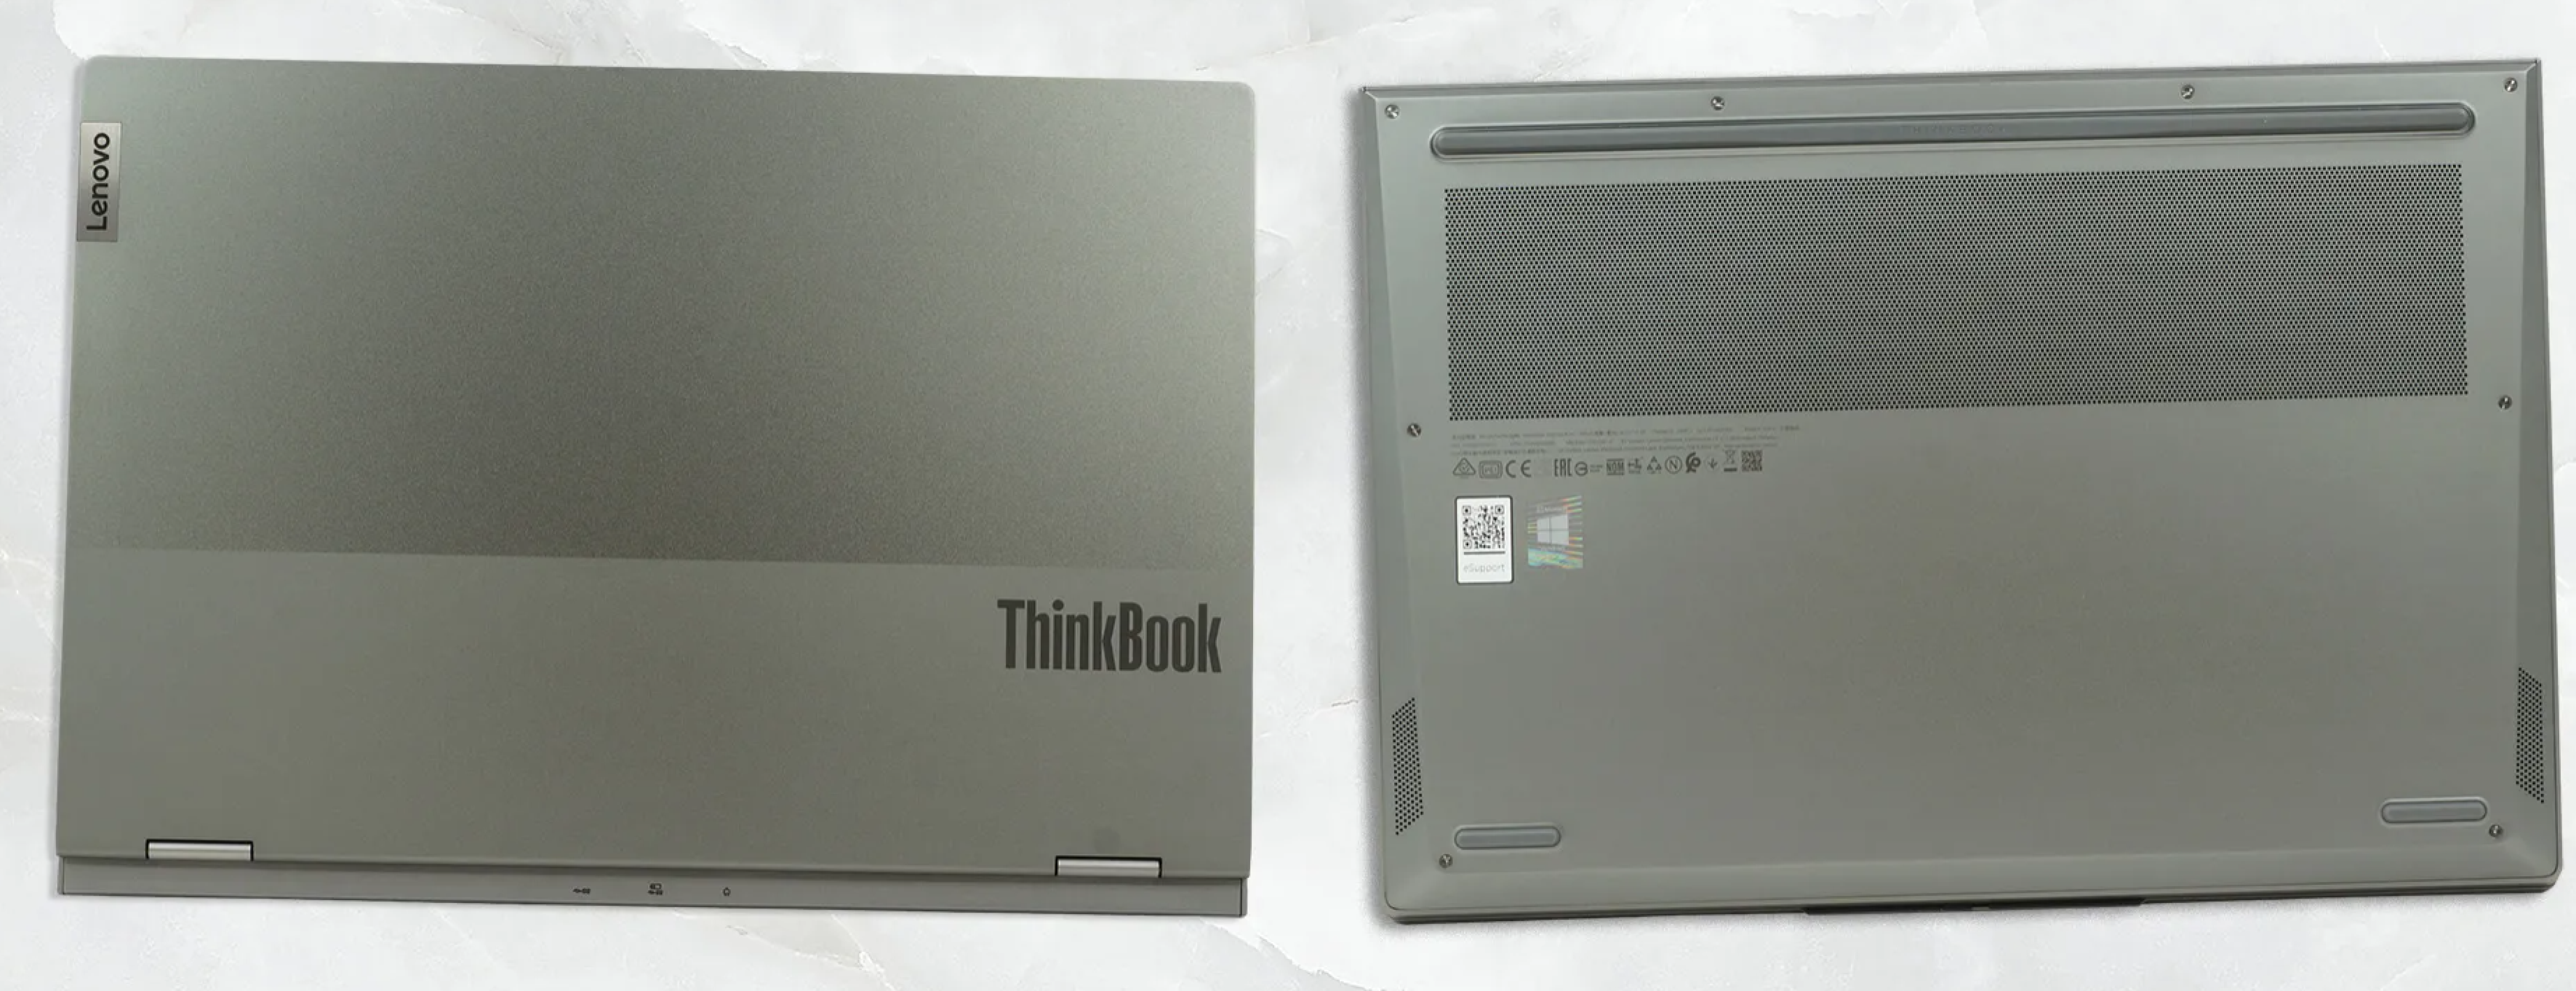  لپ تاپ لنوو تینک بوک Lenovo THINKBOOK 16P | لاکچری لپ تاپ 